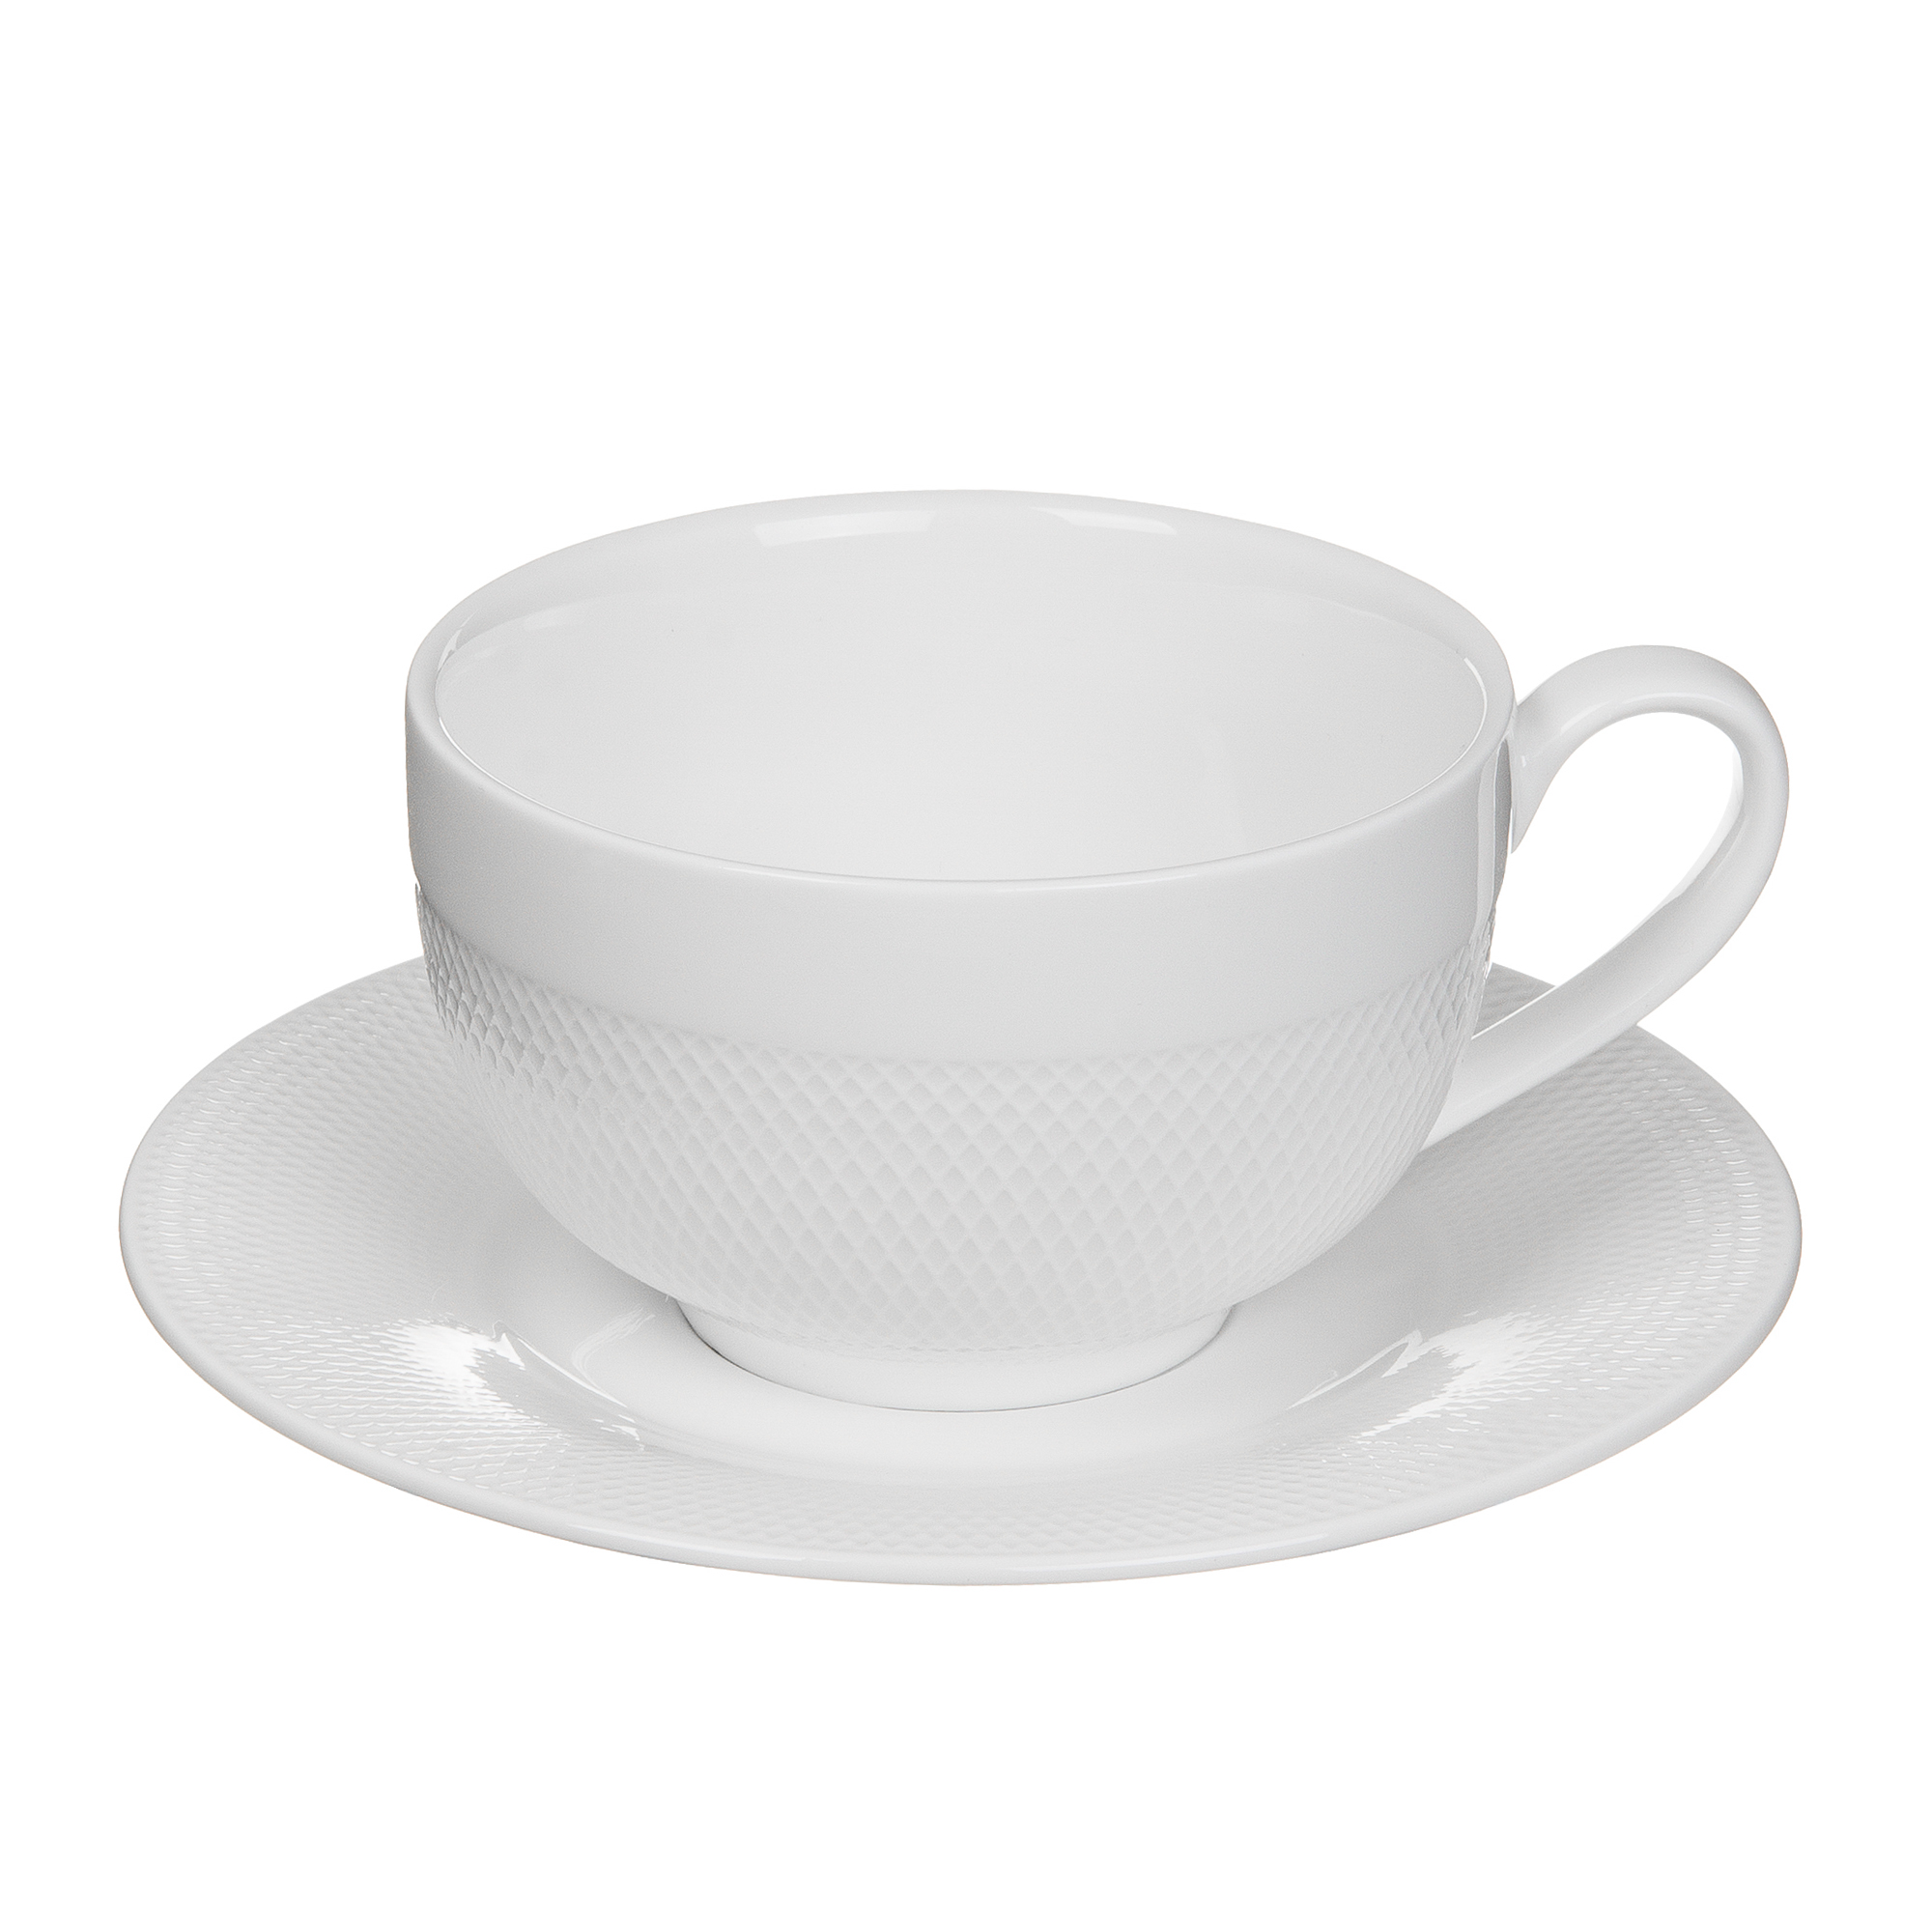 Пара кофейная чашка + блюдце 230 мл Tudor TUC1062-4 пара чайная чашка блюдце 240 мл tudor tu9999 3